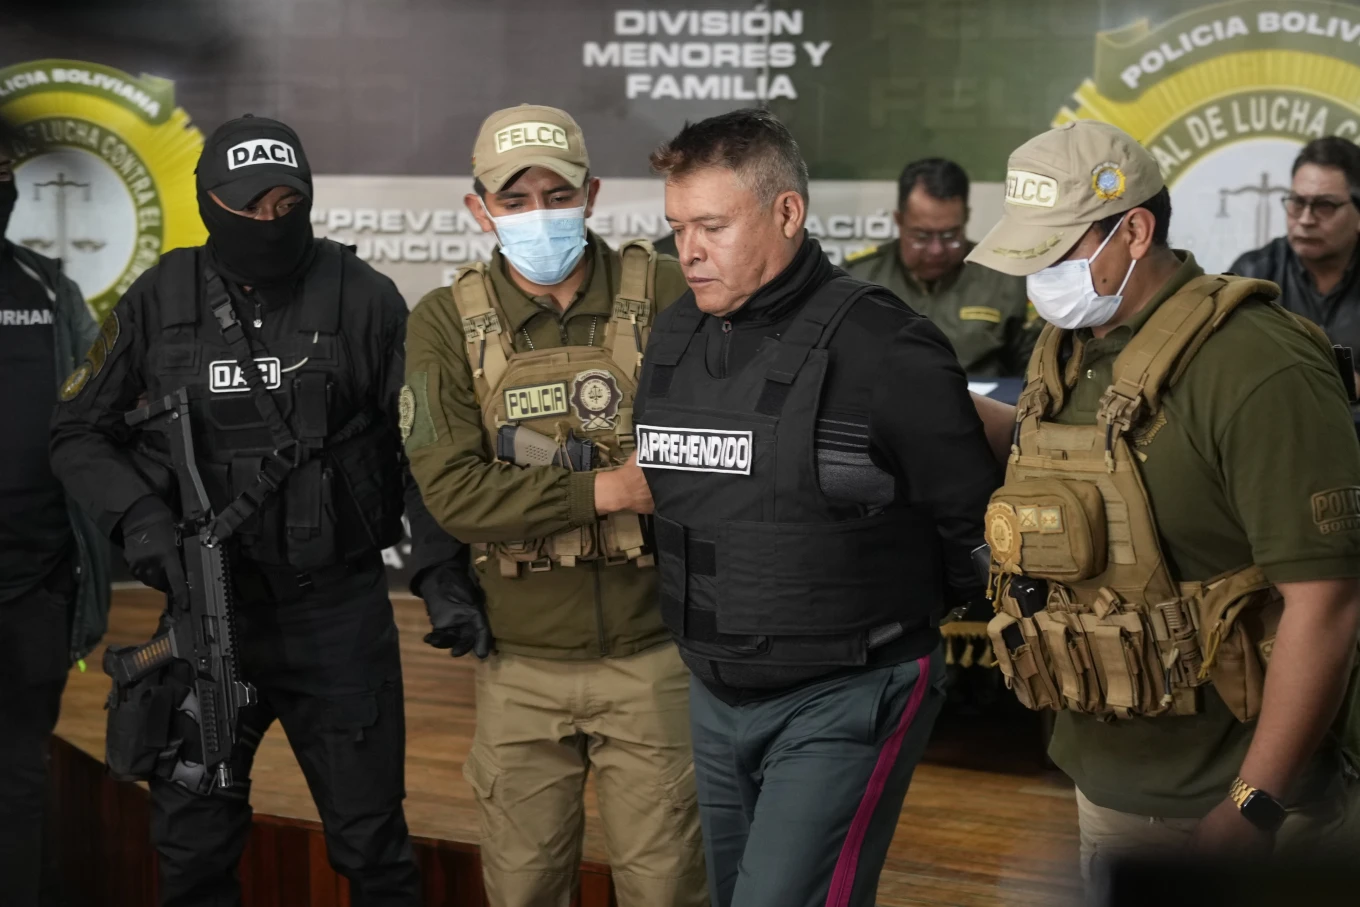 grushti i deshtuar i shtetit ne bolivi gjenerali ne pranga nxirret para mediave